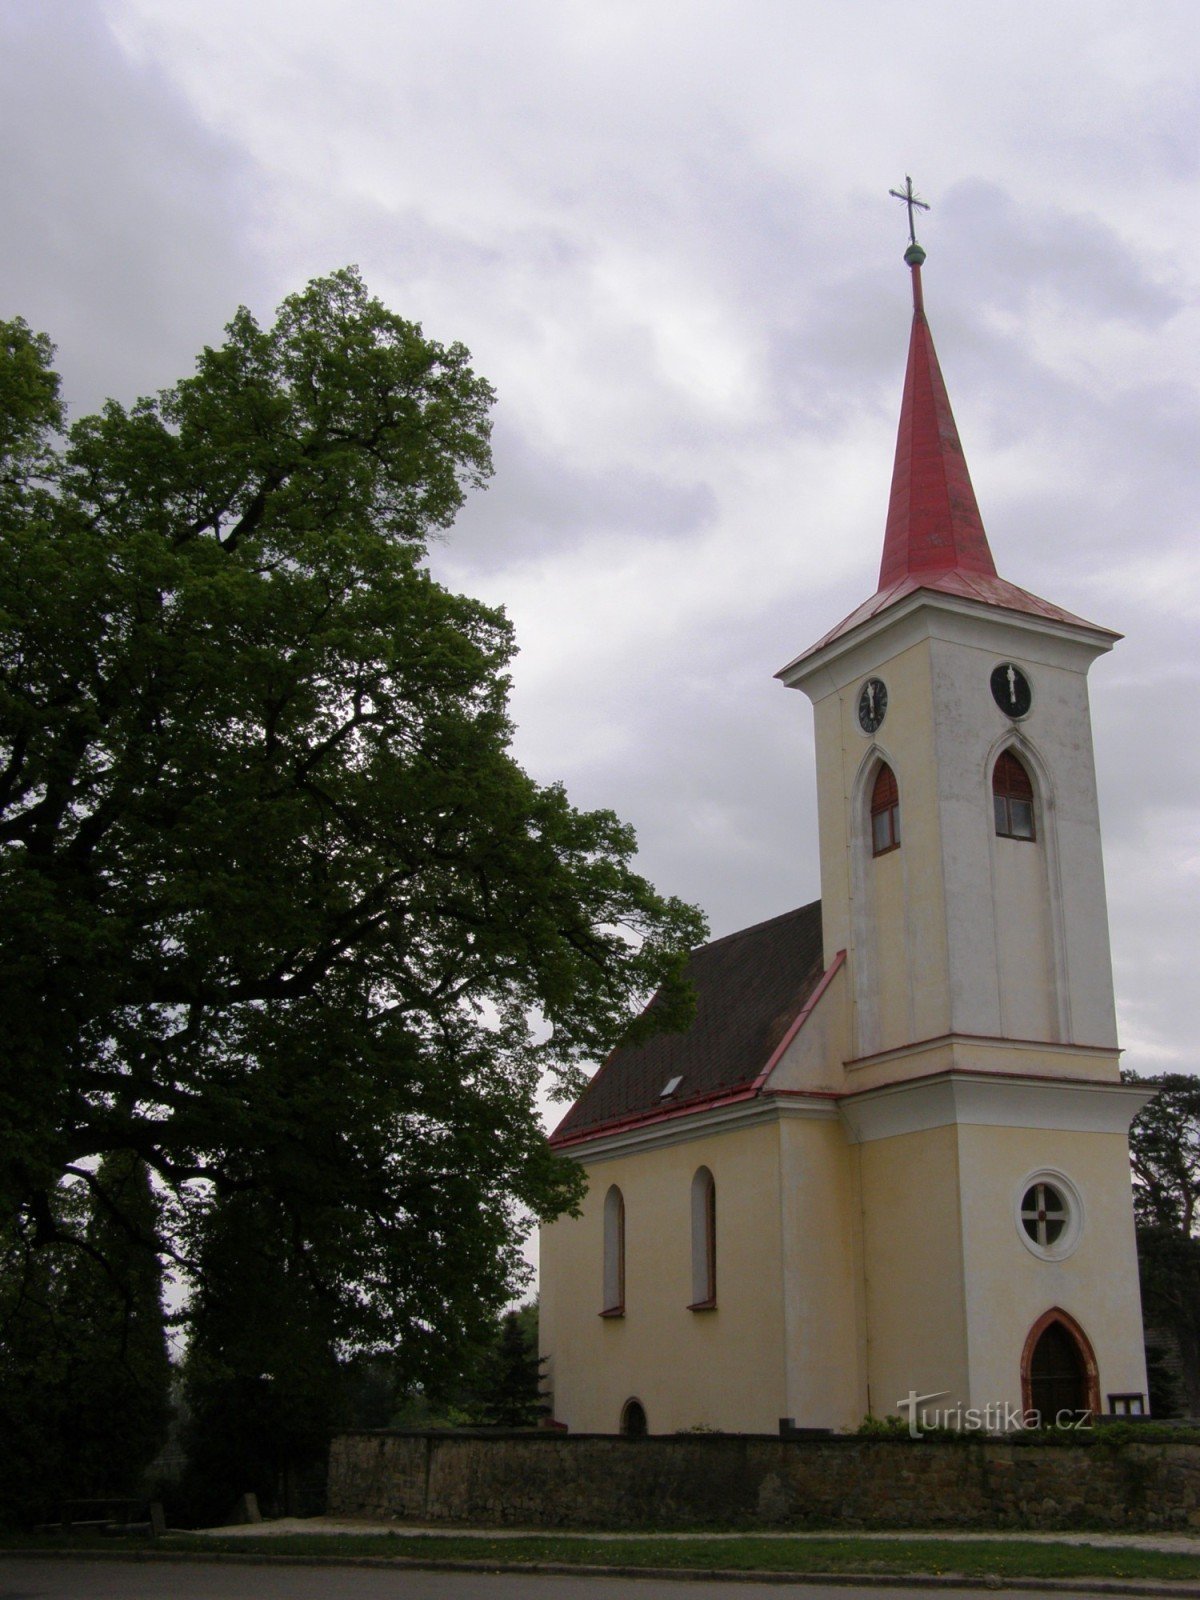 Velichovky - Kirche der Verklärung des Herrn